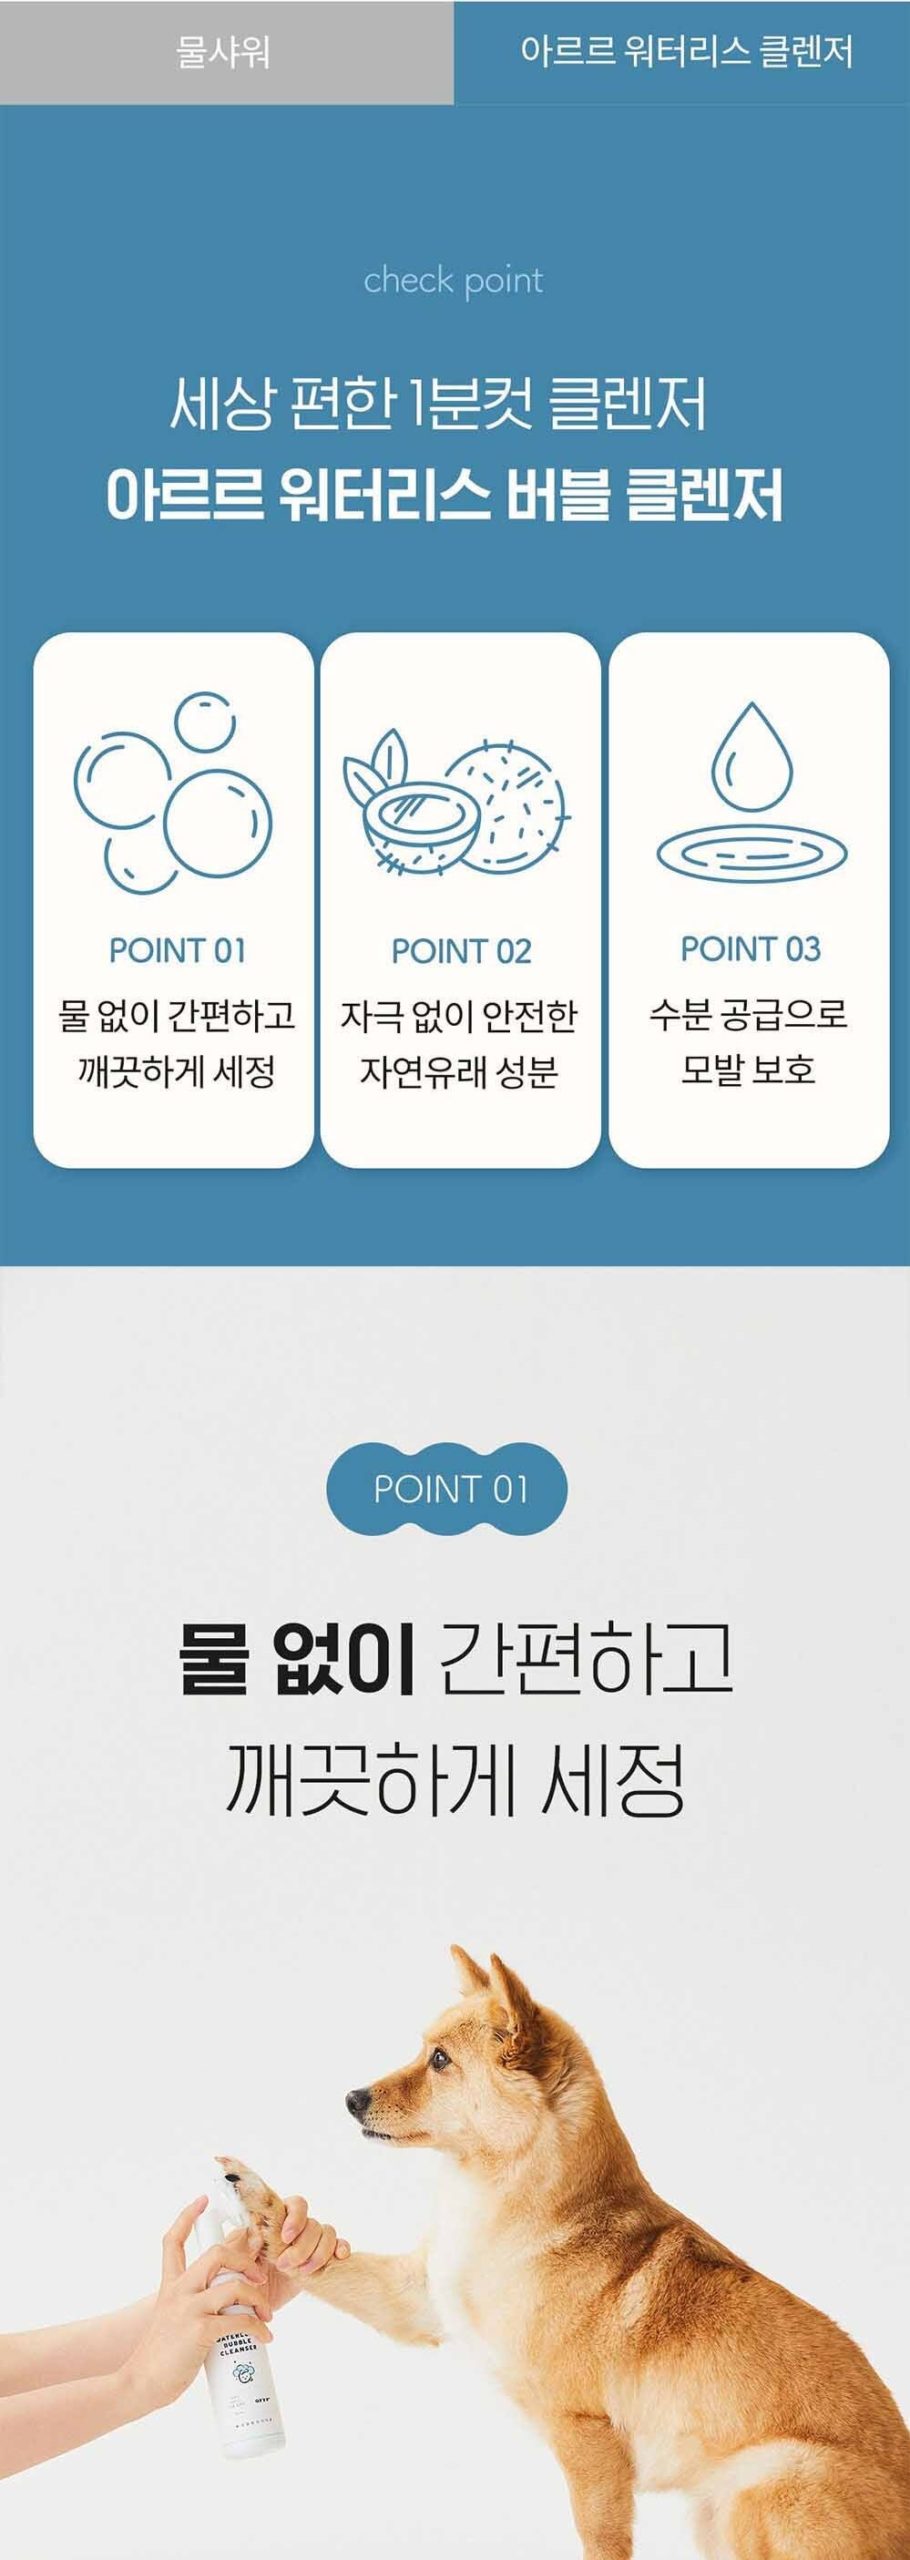 韓國食品-[아르르] 워터리스 버블 클렌저 150ml